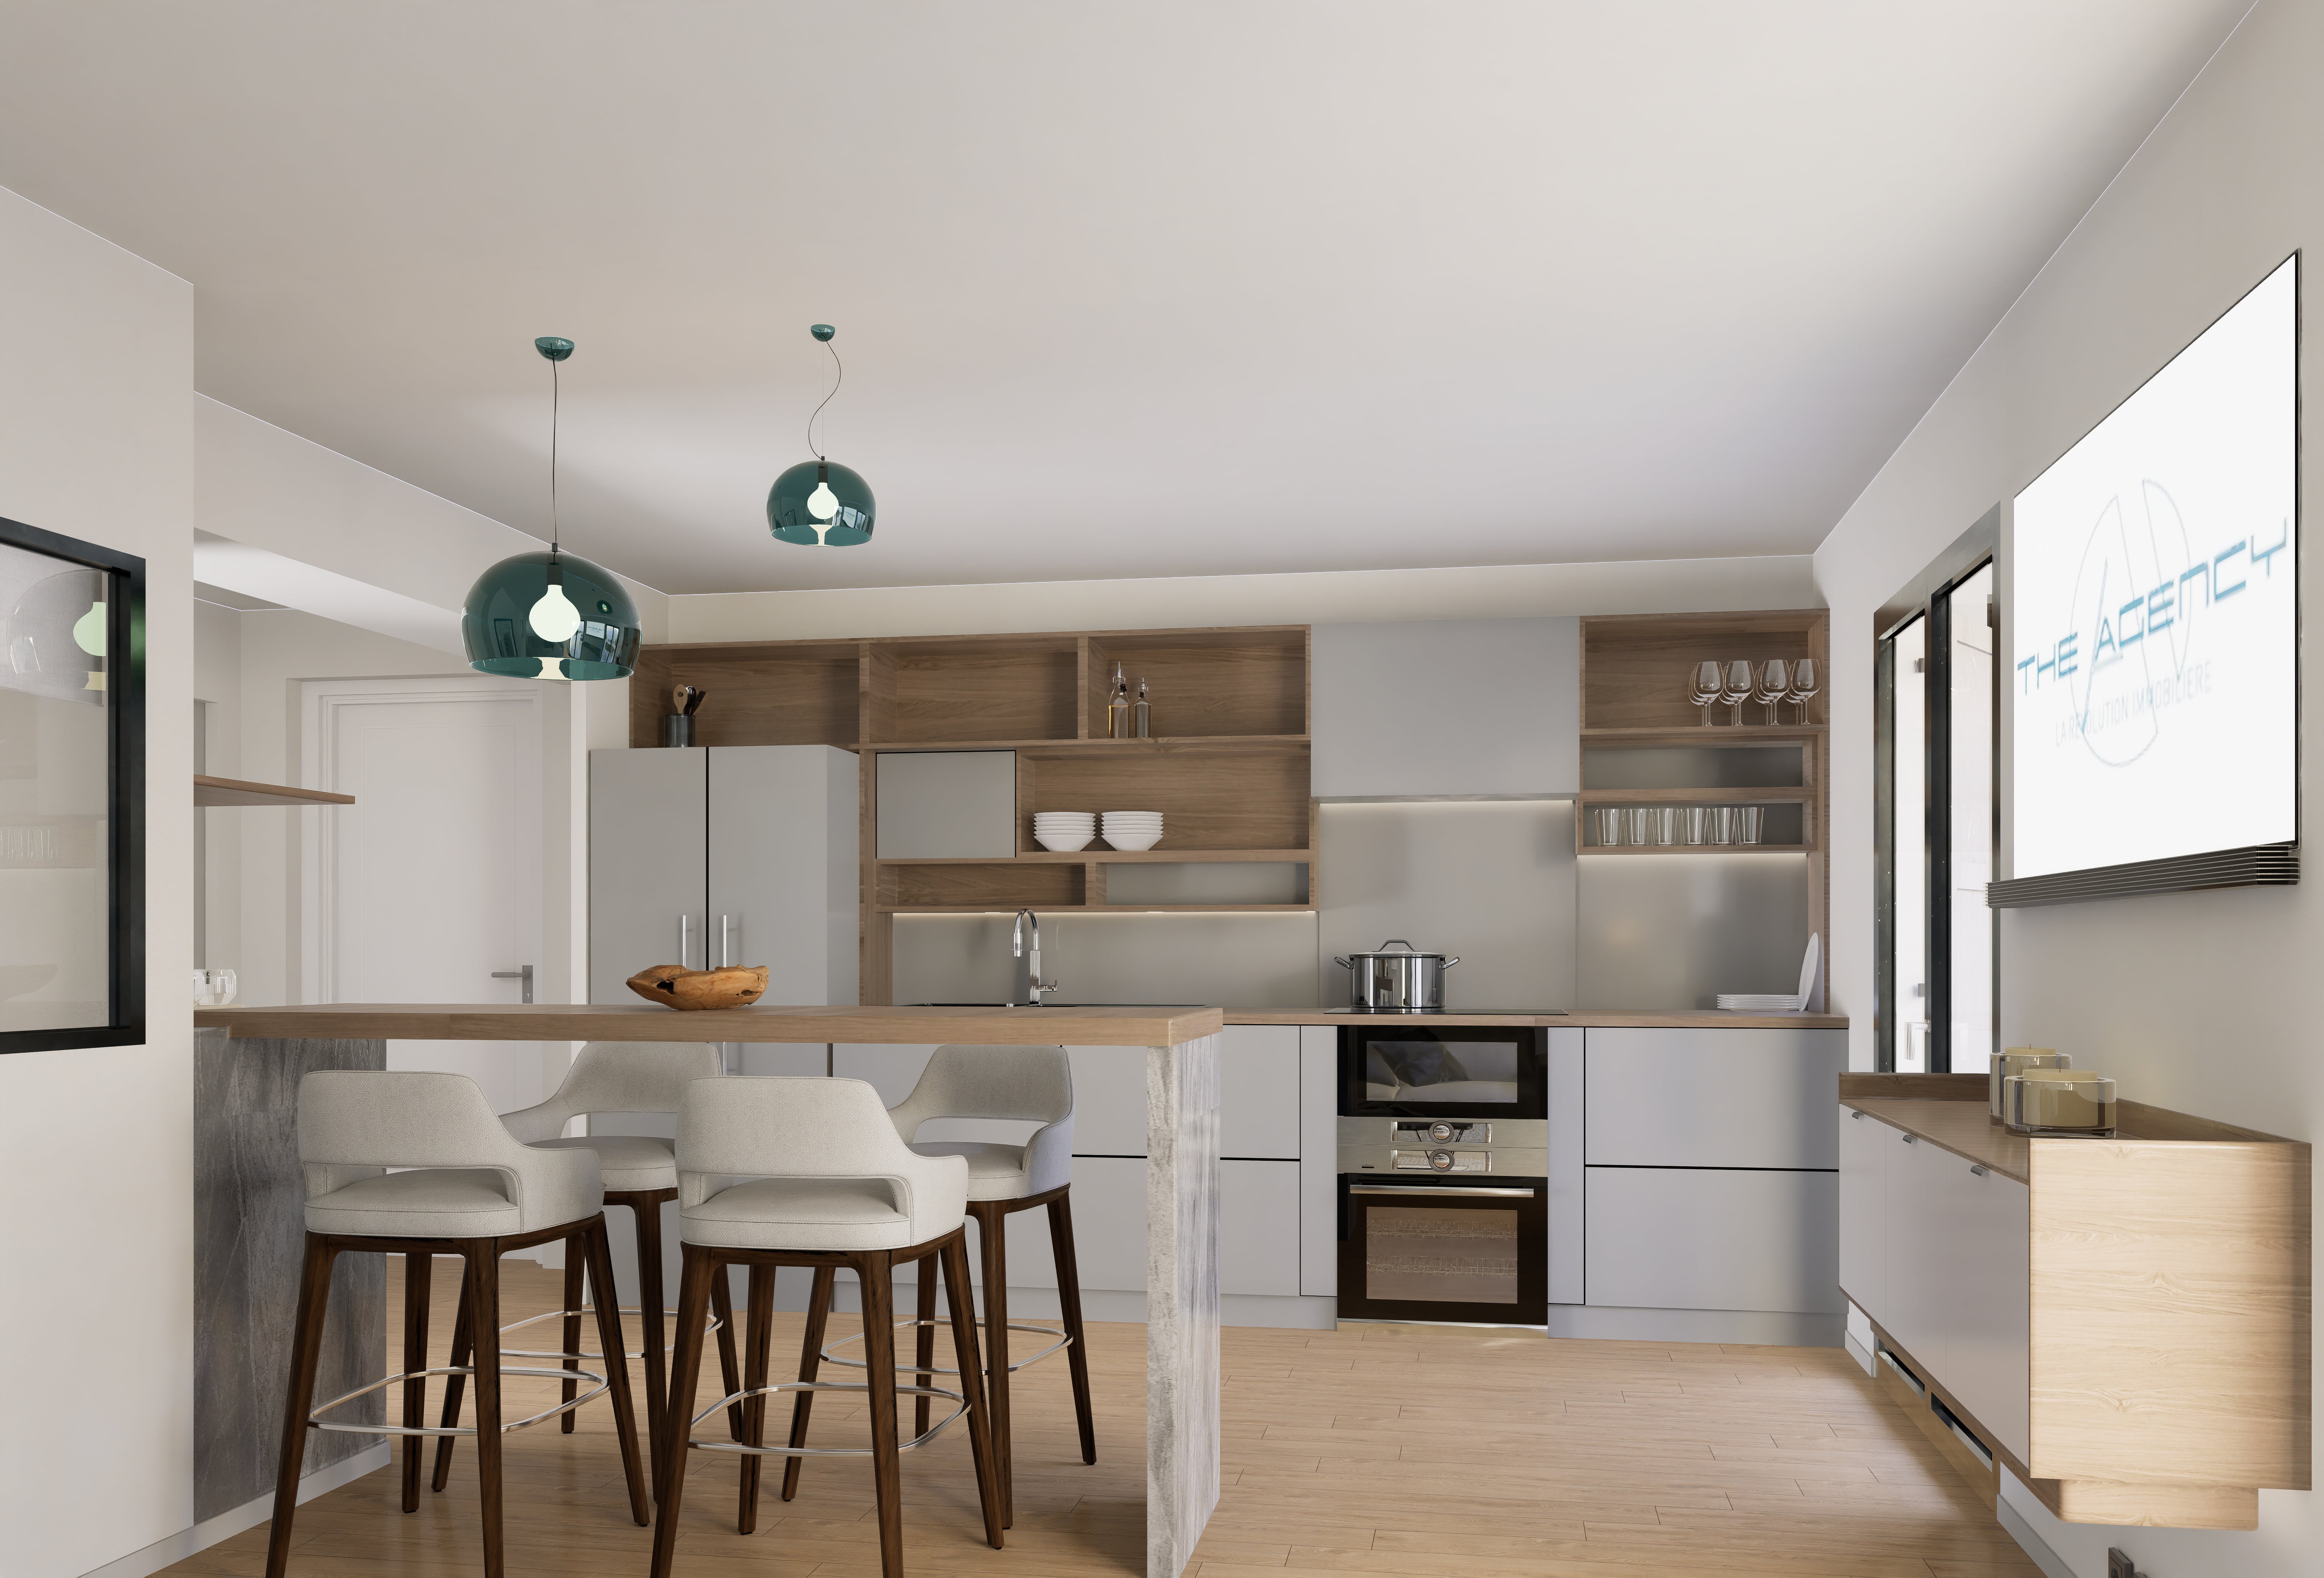 ab3d design - Projet d'aménagement d'appartement en partenariat avec THE AGENCY IMMO - Marseille